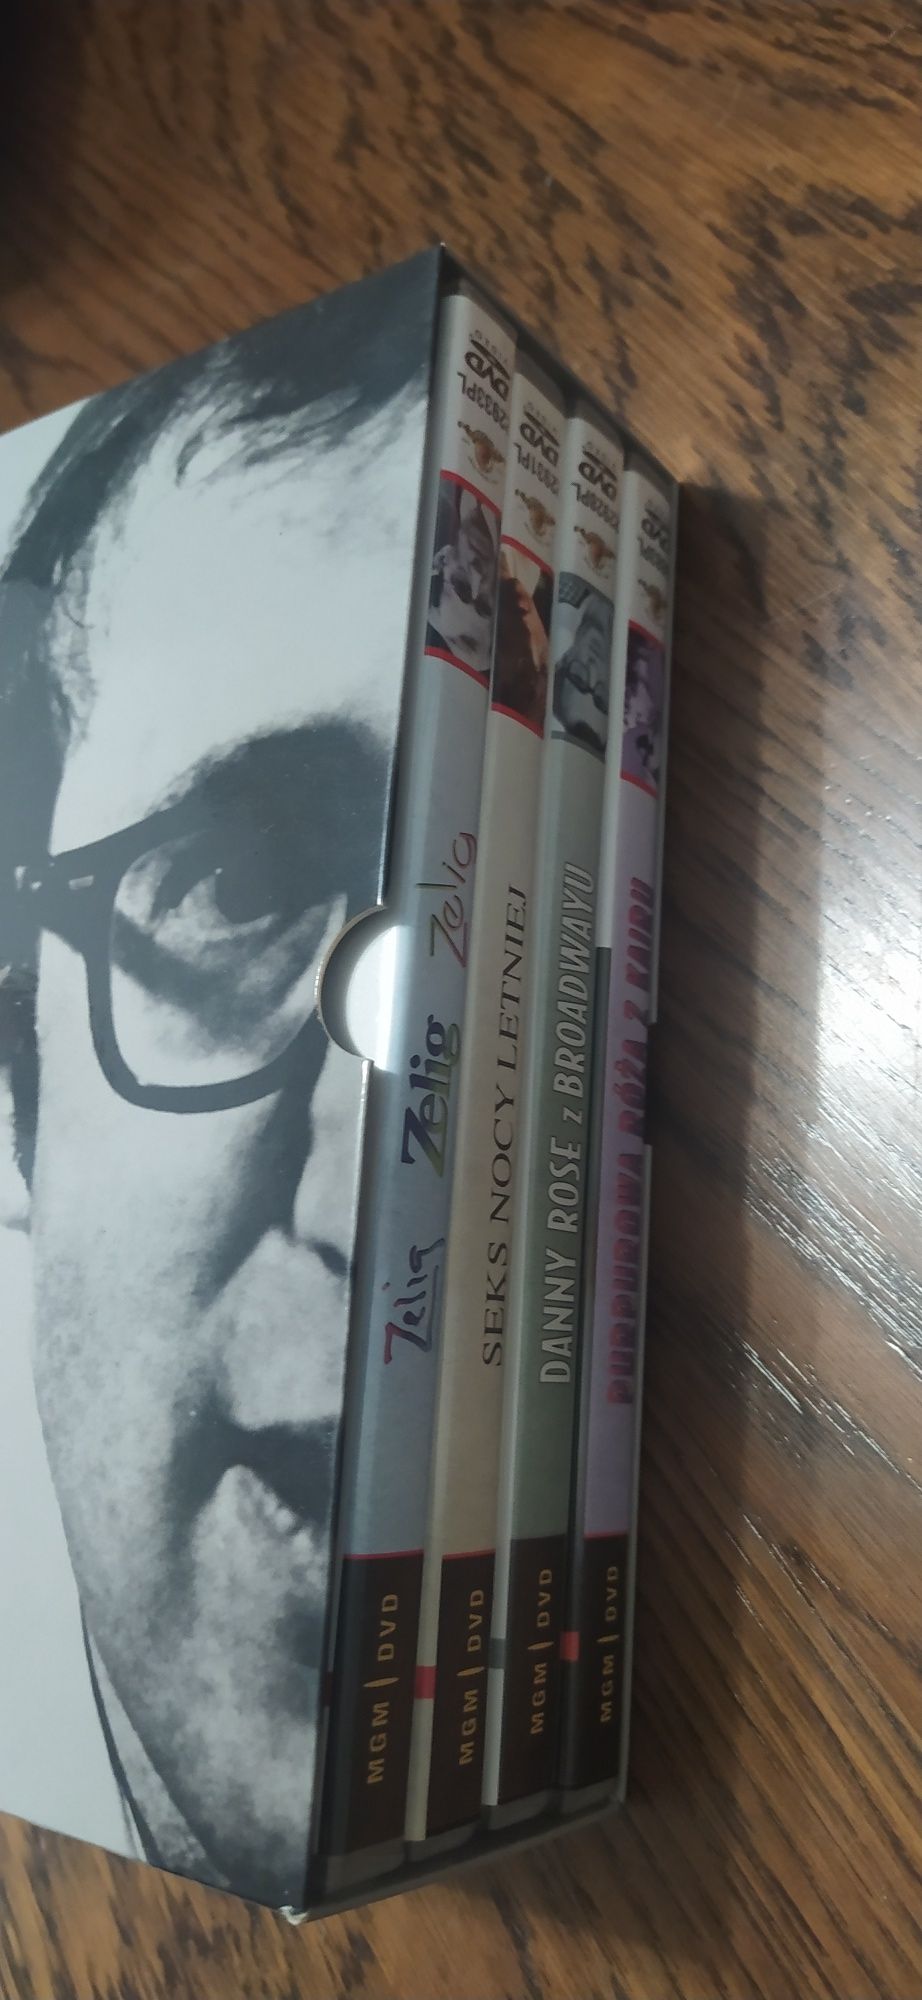 Woody Allen kolekcja 4 filmy dvd